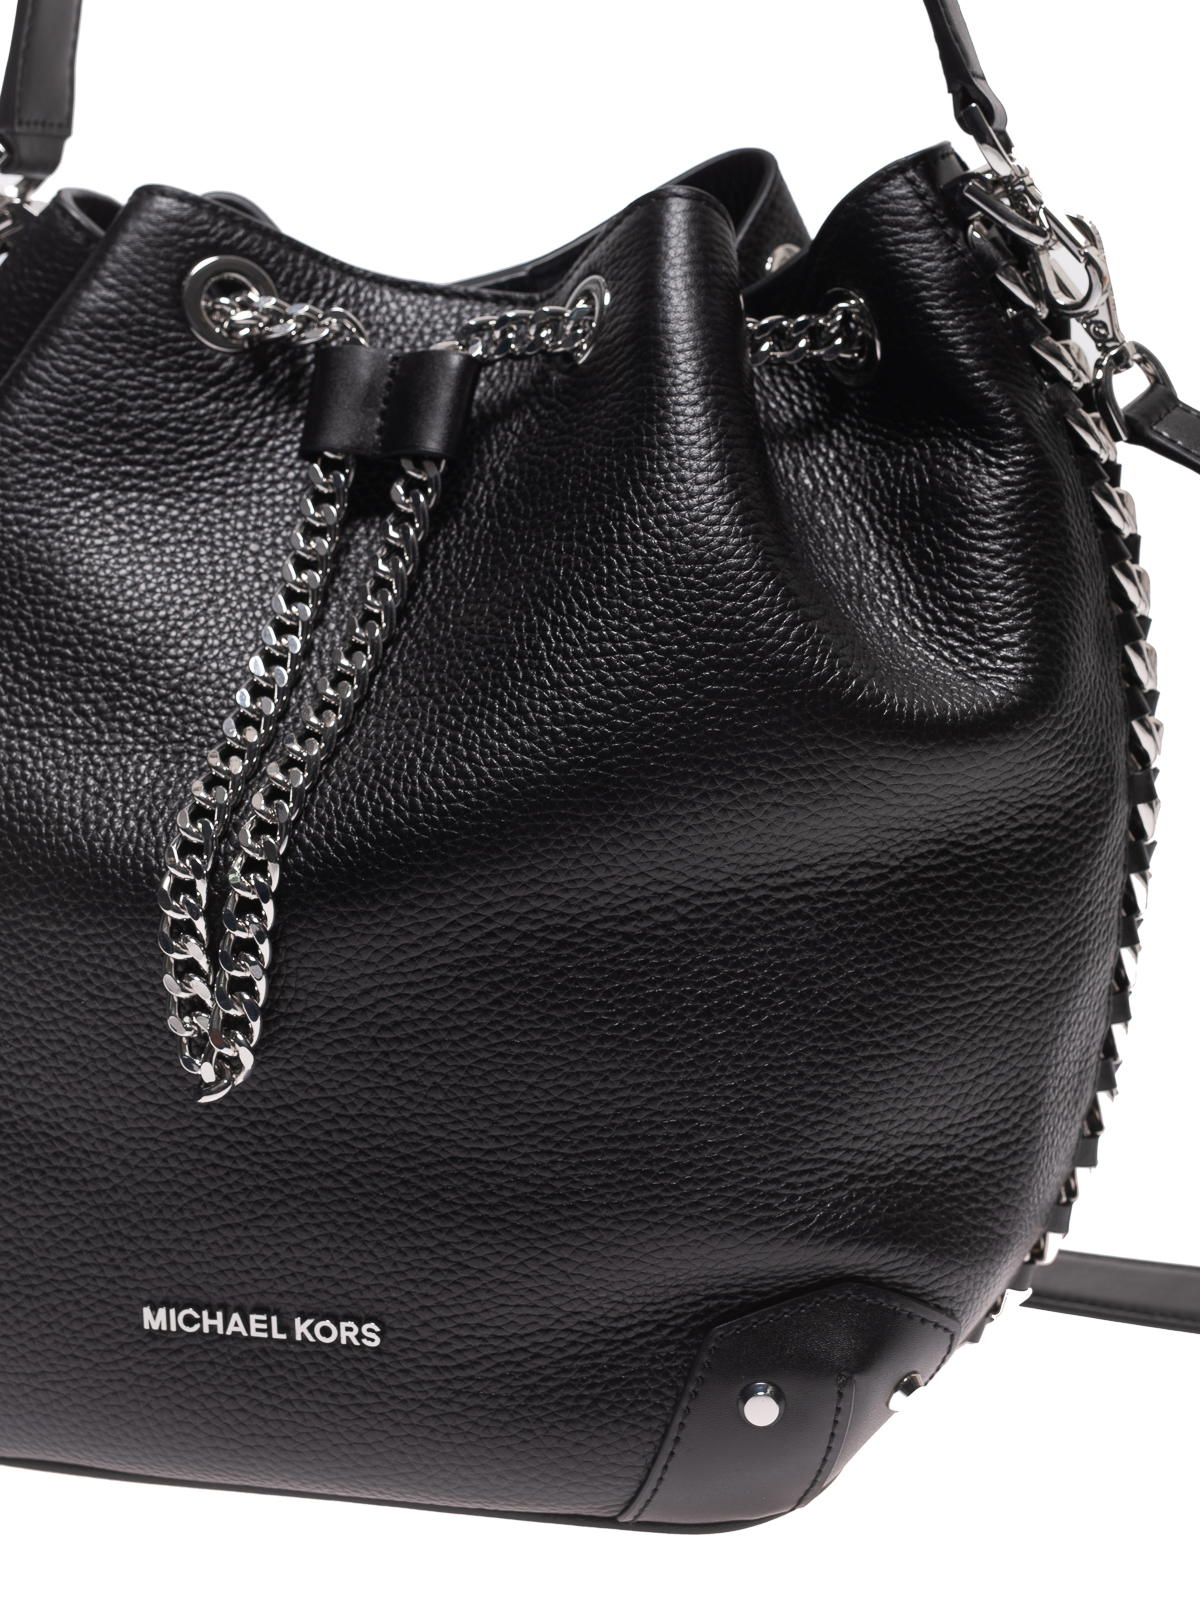 Michael Kors Black bucket Handbag